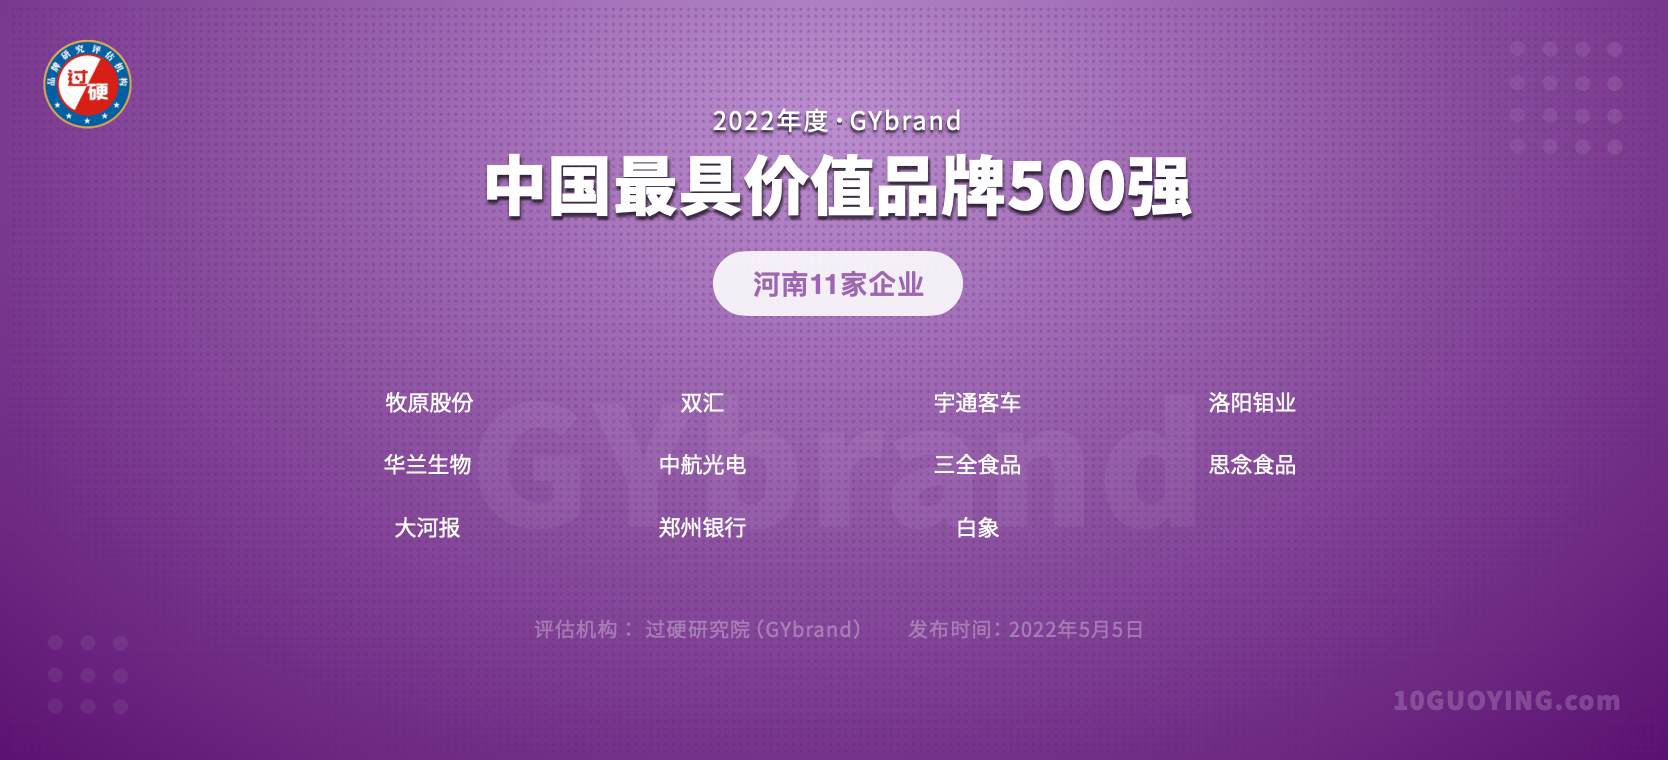 2022中国品牌500强河南11家企业名单一览:郑州6家,洛阳2家